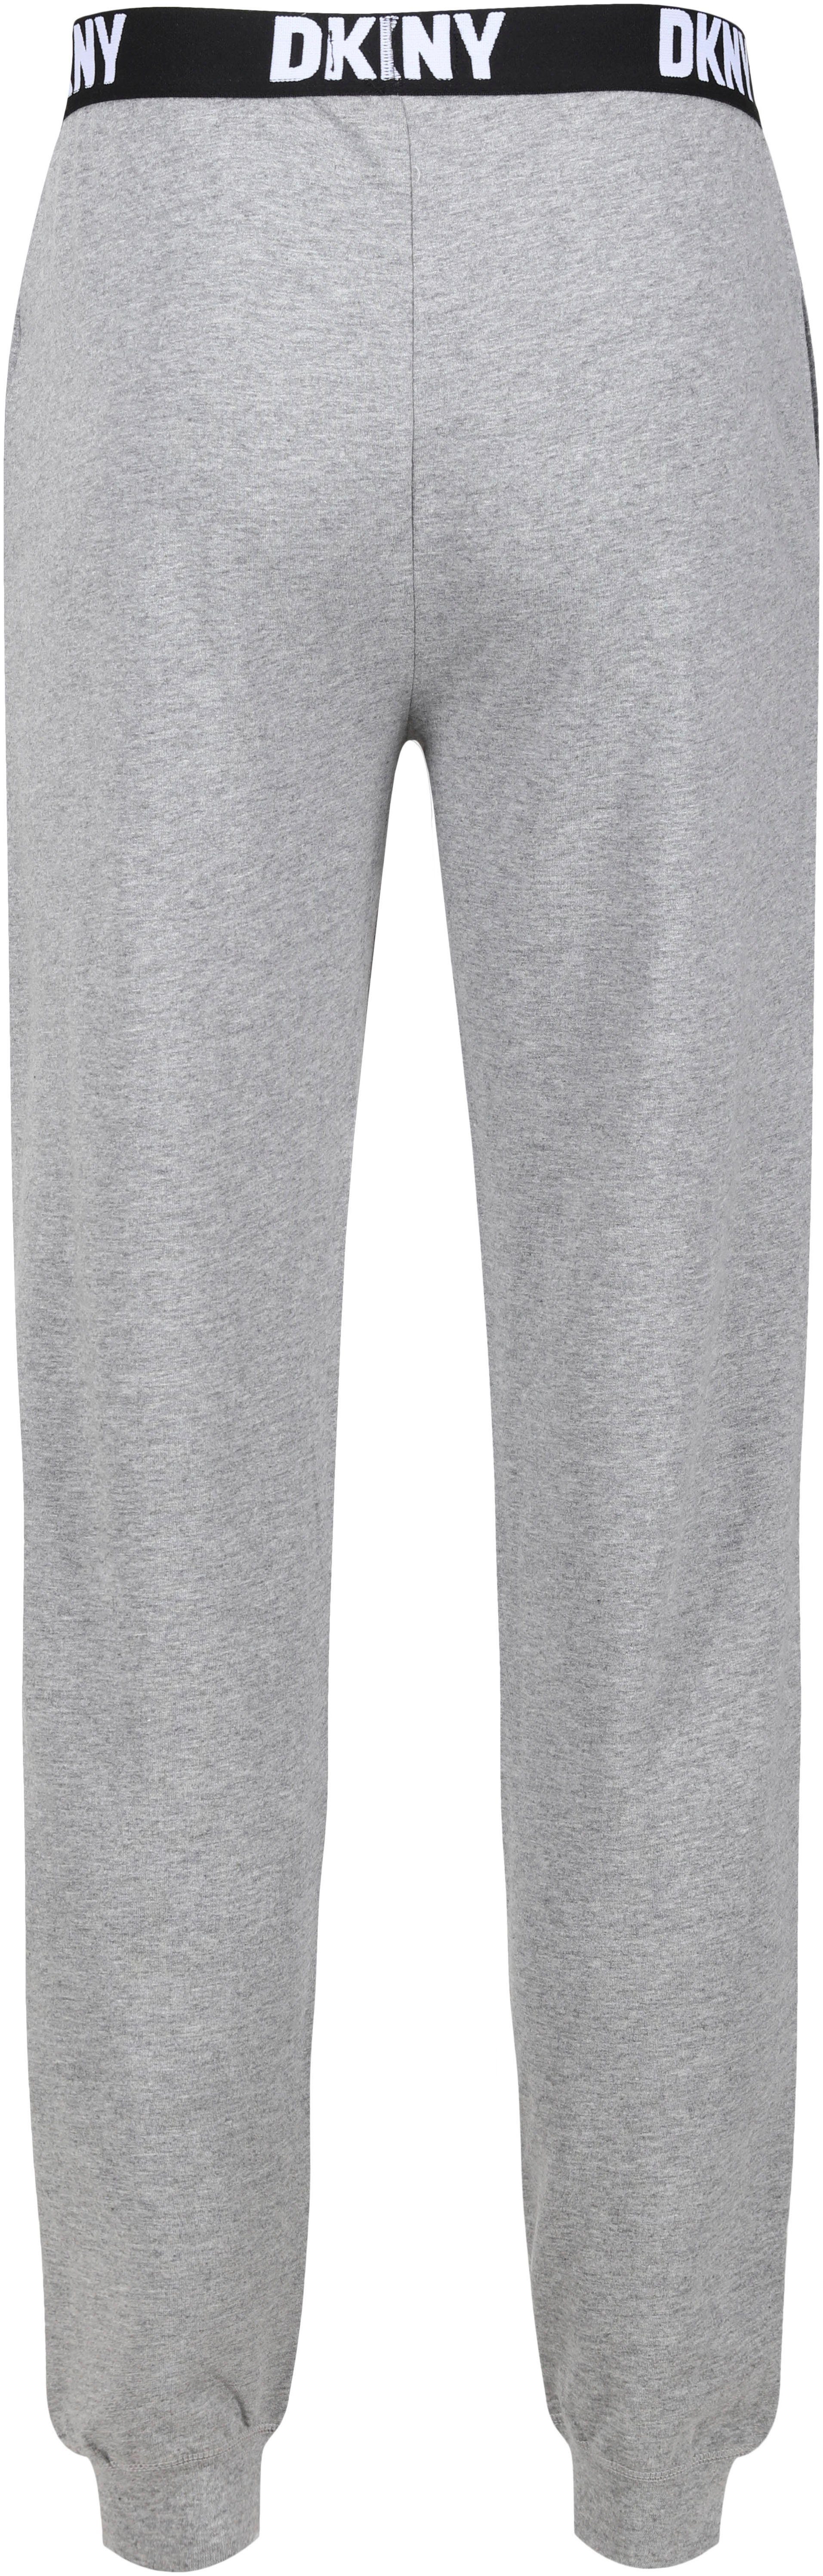 DKNY Loungepants mit elastischem Logo-Bündchen grey